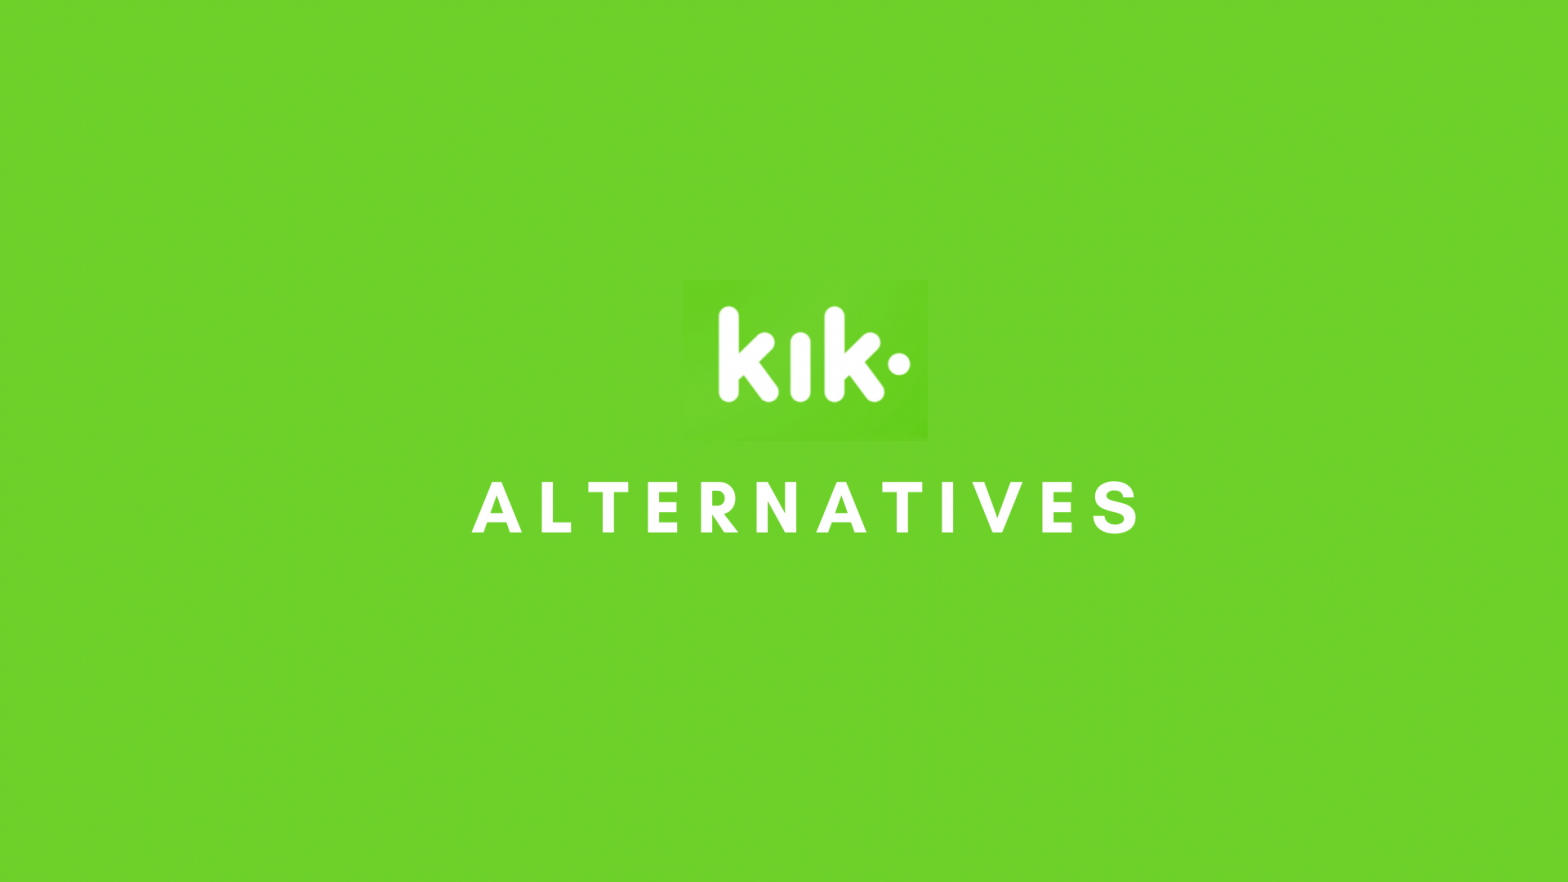 Kik alternatives